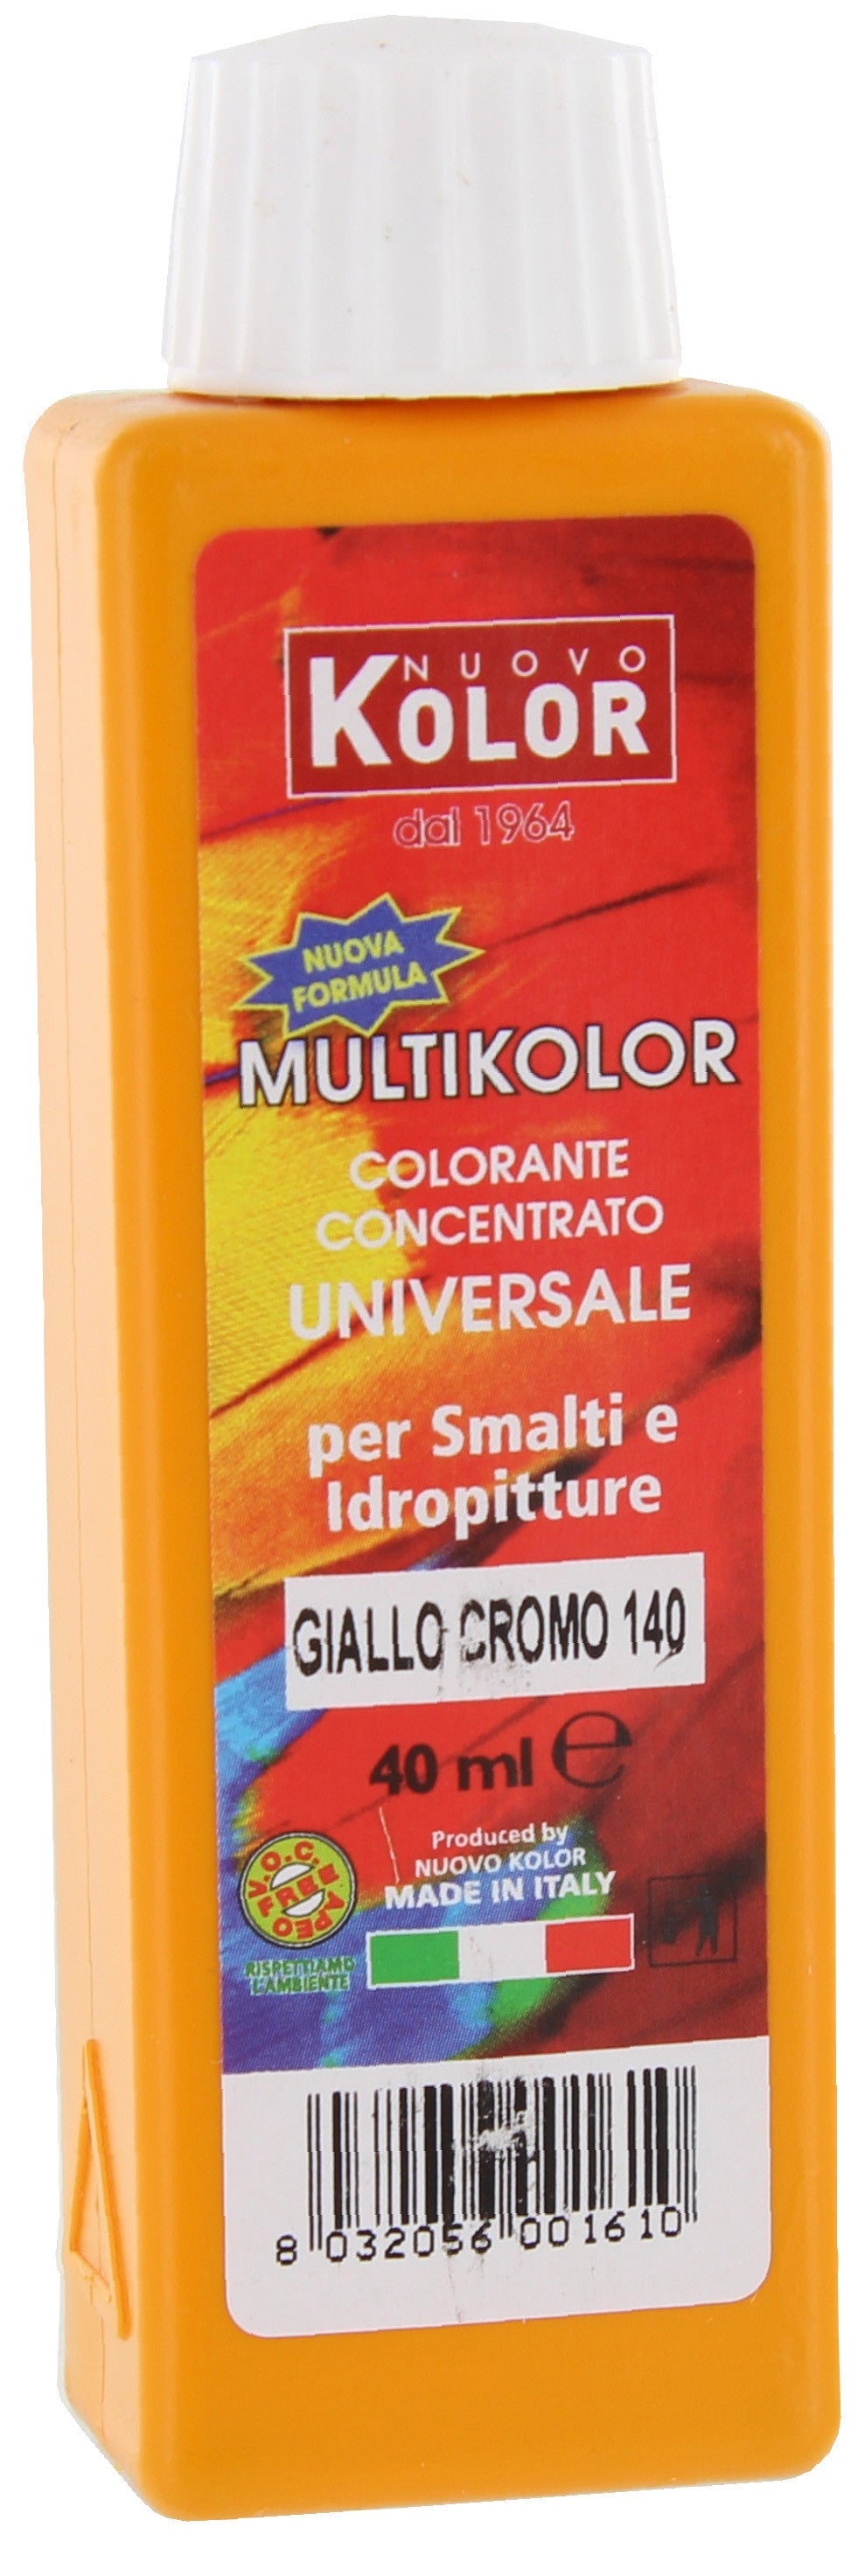 Colorante universale ml.40 giallo cromo 140r